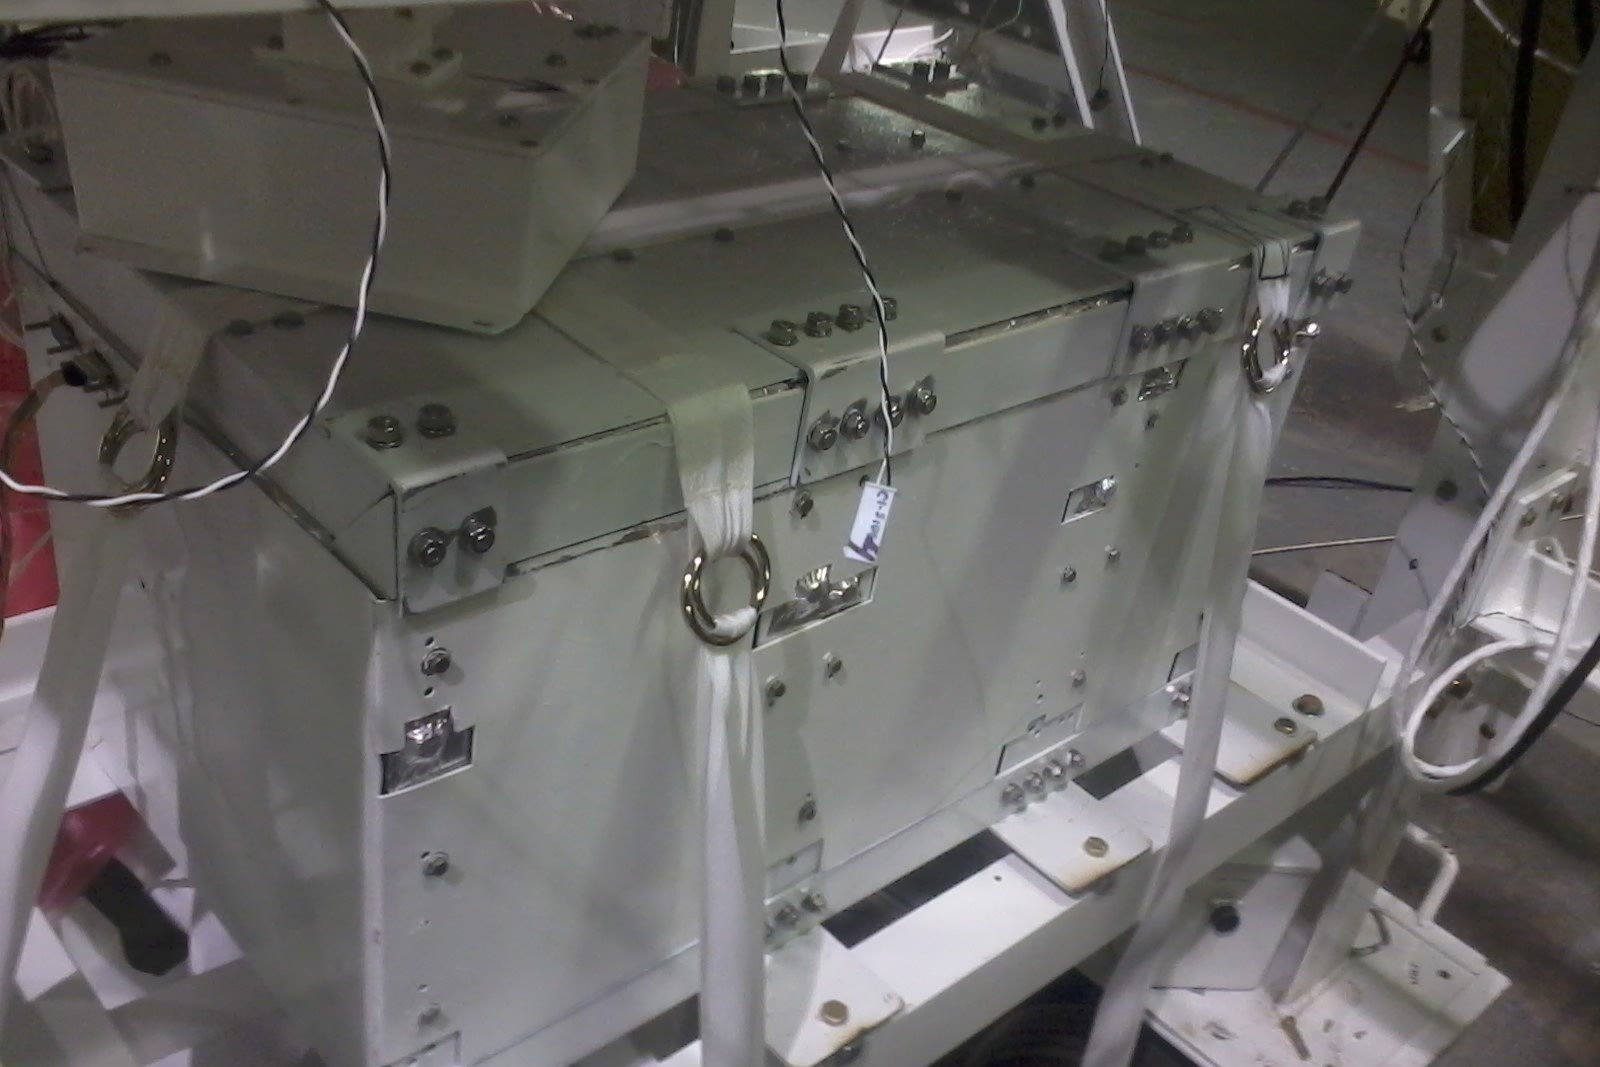 PIXQUI instalado en la gondola de la NASA previo a vuelo